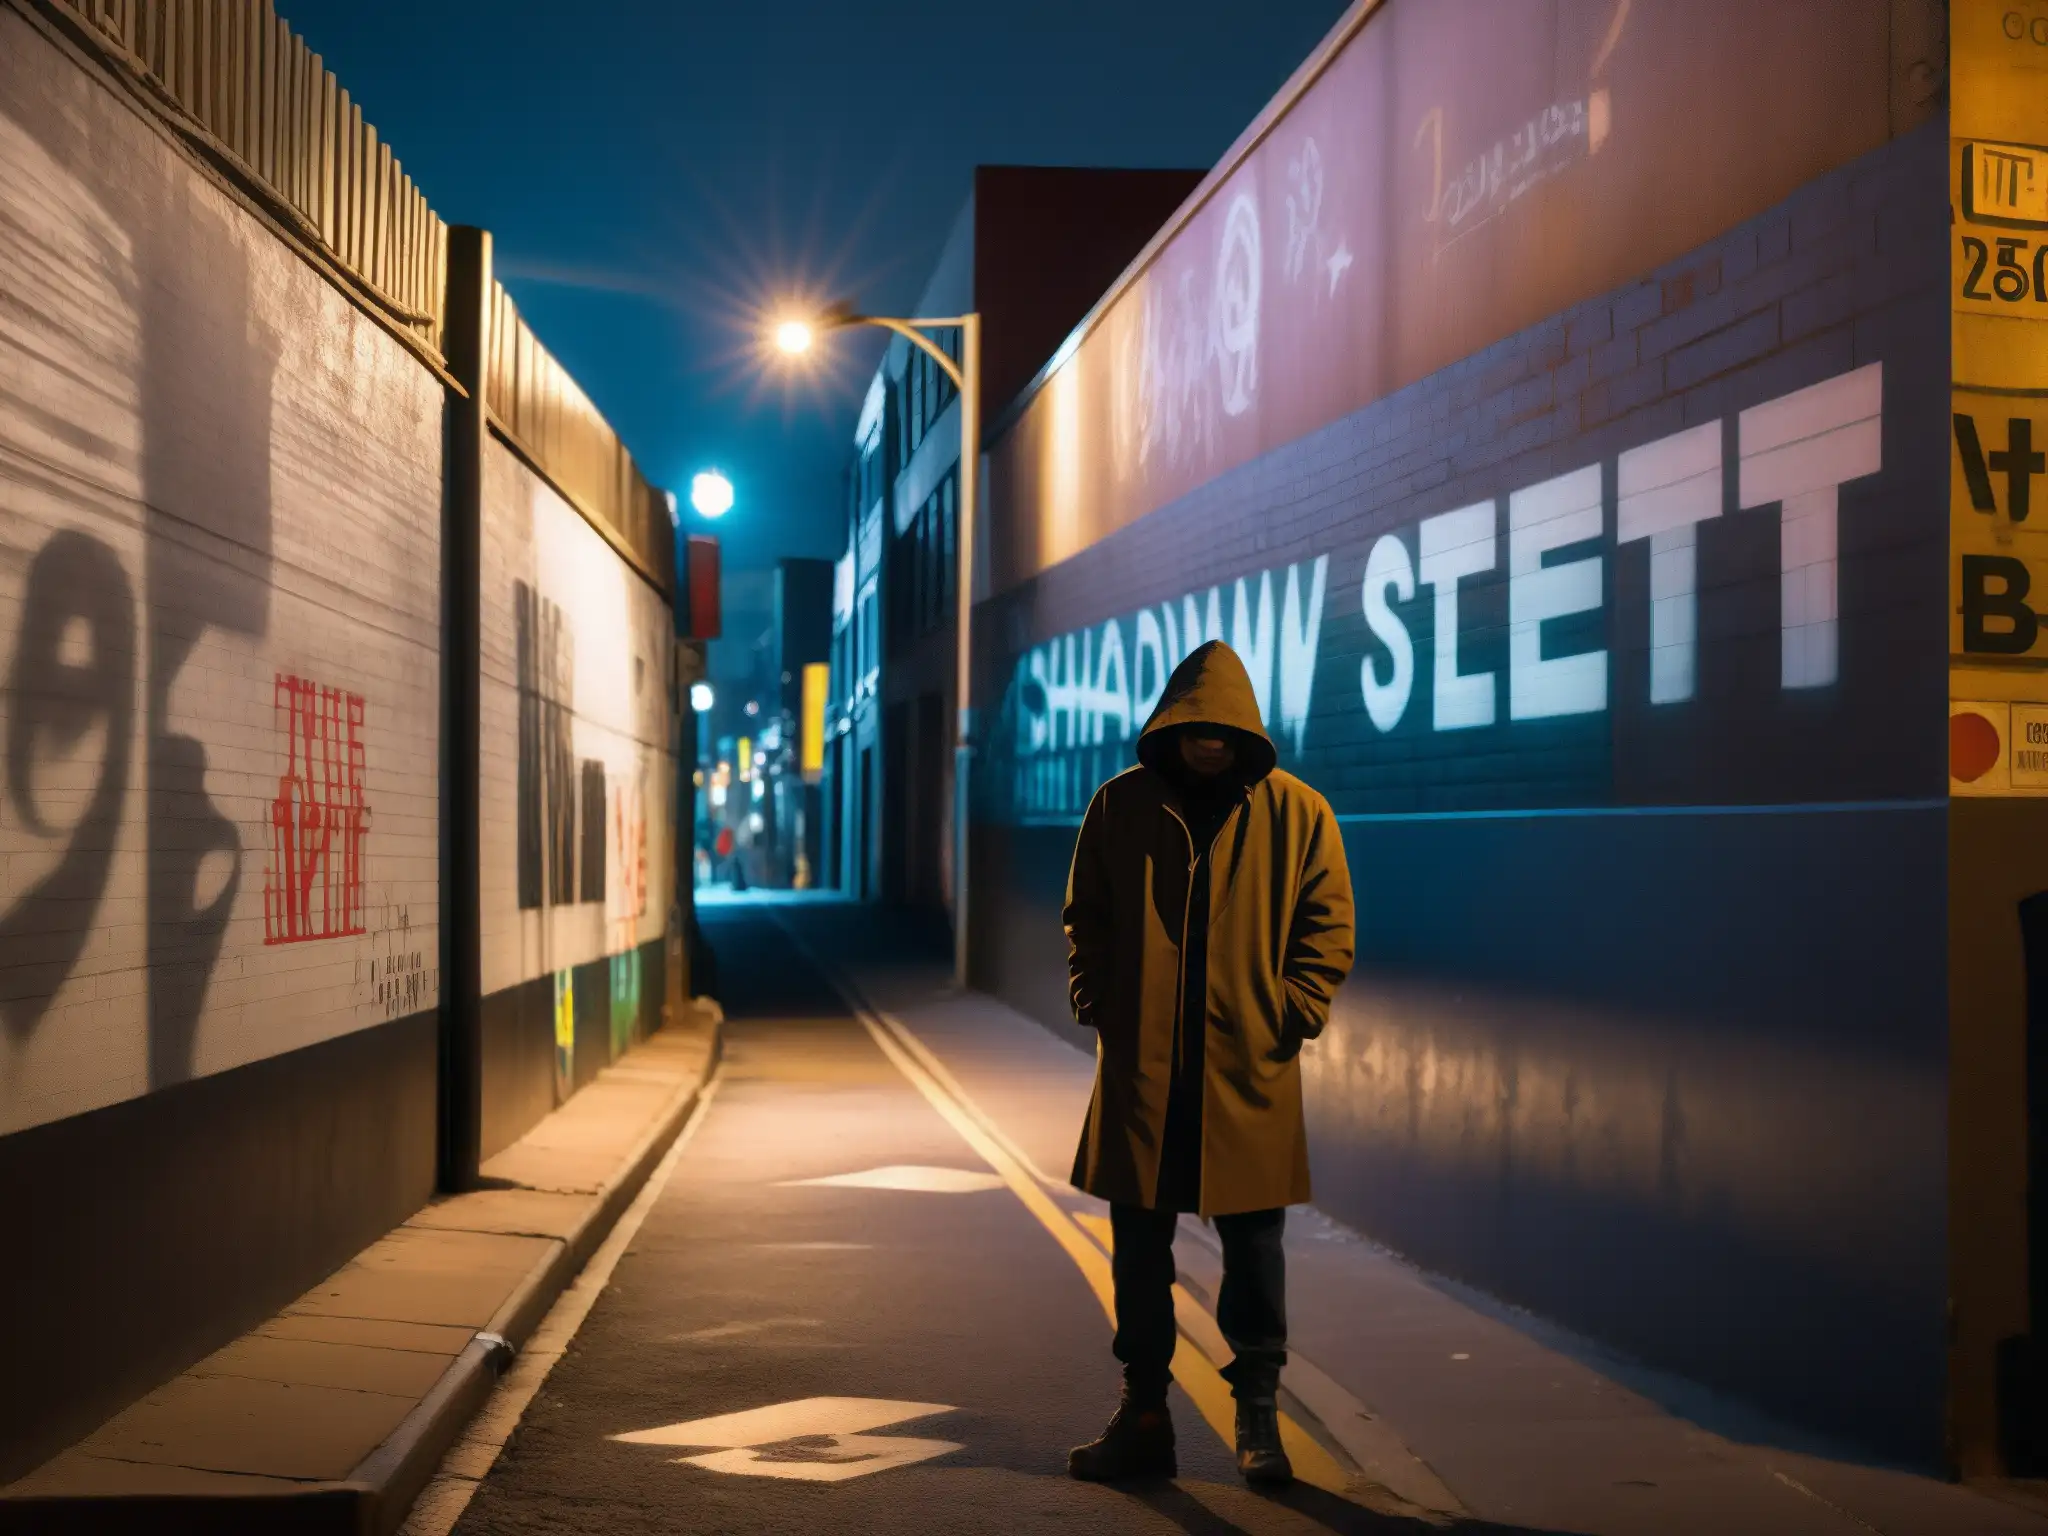 Una misteriosa calle urbana iluminada por farolas, donde una sombría figura se destaca junto a un muro graffiteado